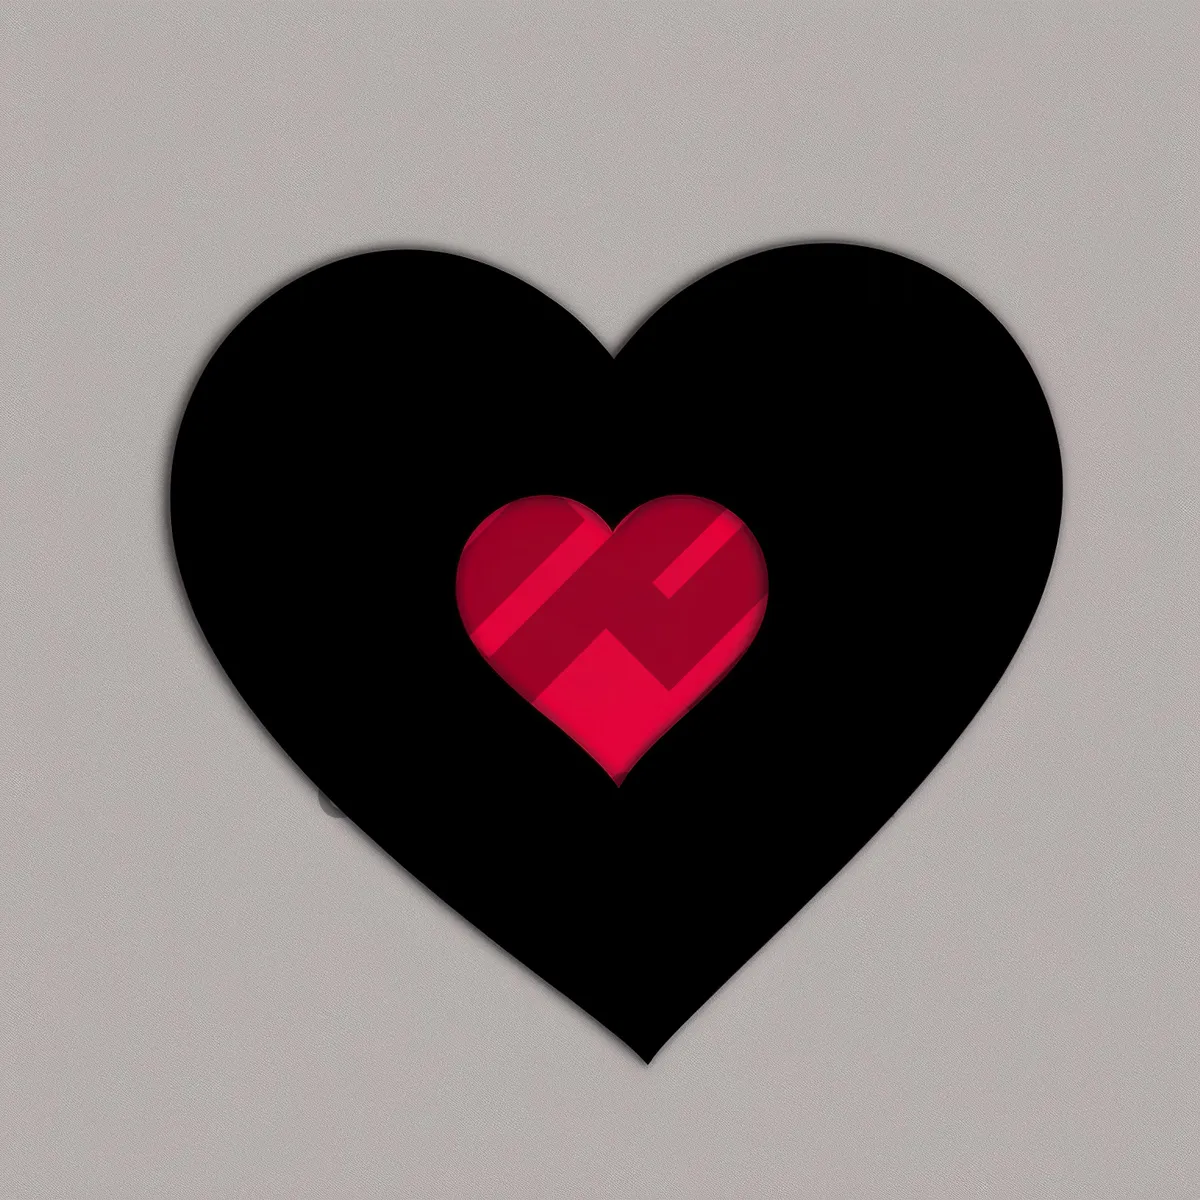 Picture of Romantic Heart Icon - Valentine's Symbol of Love